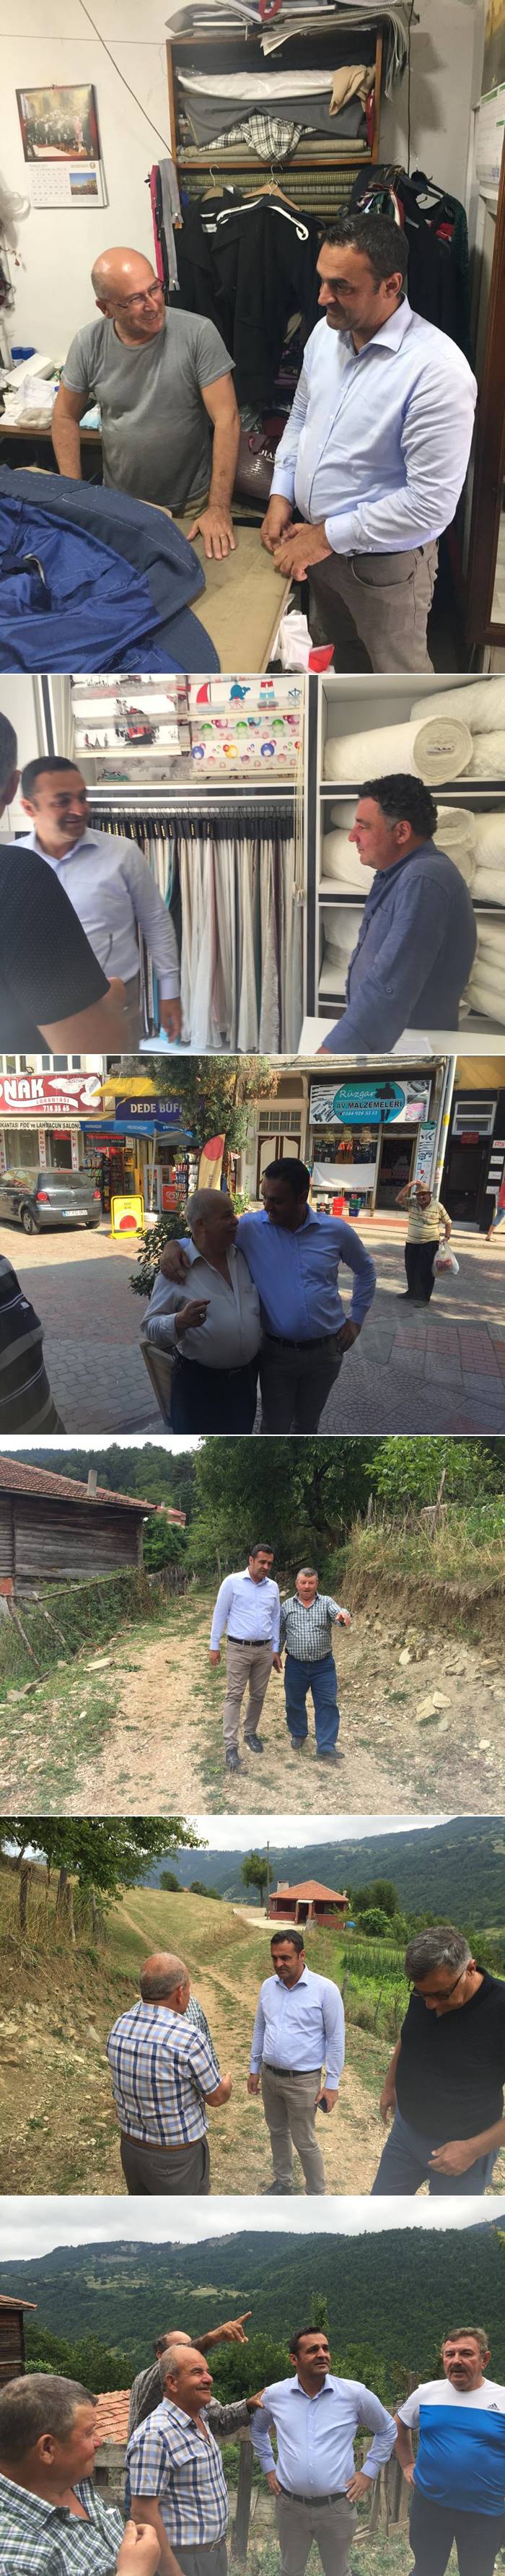 TBMM Başkanlık Divanı Üyesi CHP’li Barış KaradenizSinop Programı kapsamında gerçekleştirdiği ilçe ve köy ziyaretleri devam ediyor.